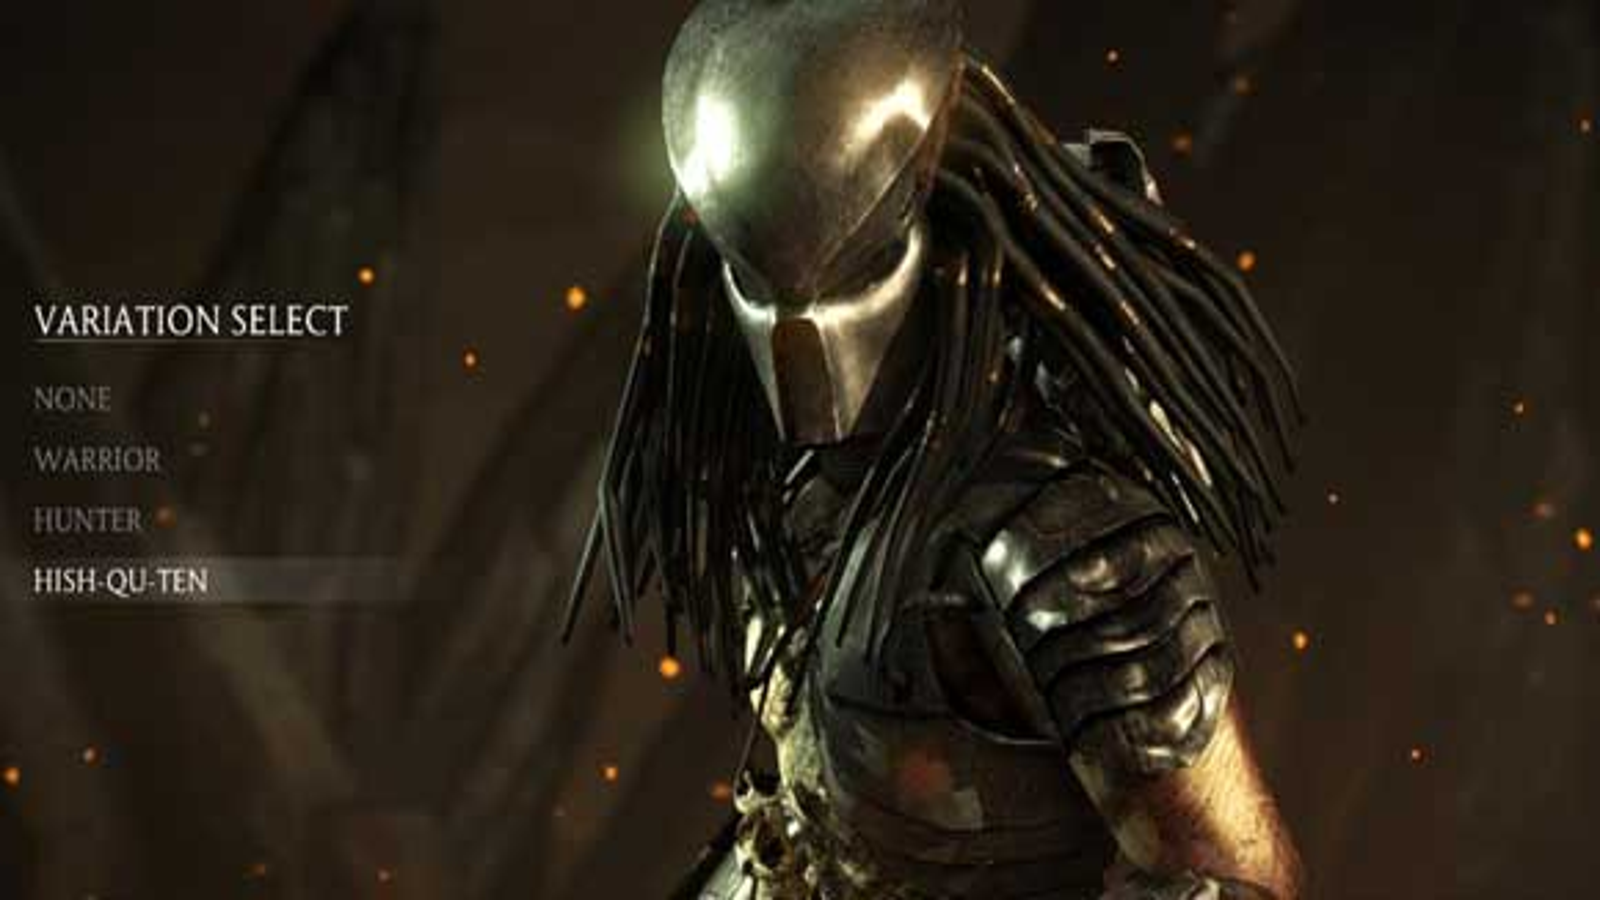 Mortal Kombat II Review - GameSpot